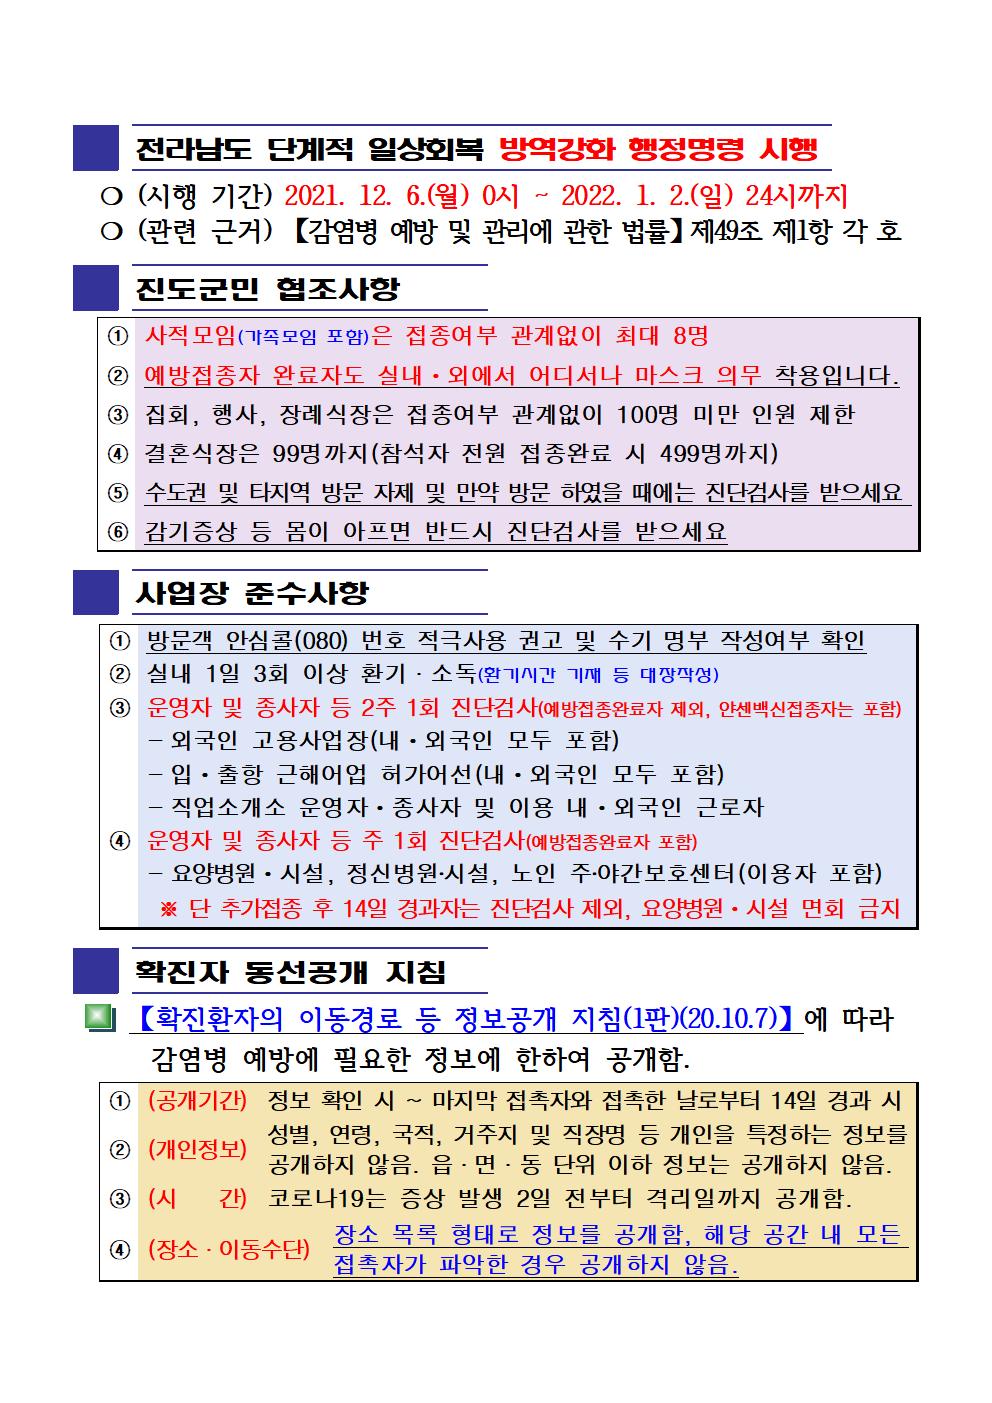 2021년 코로나 19 대응 일일상황보고(12월 10일 24시 기준) 첨부#2